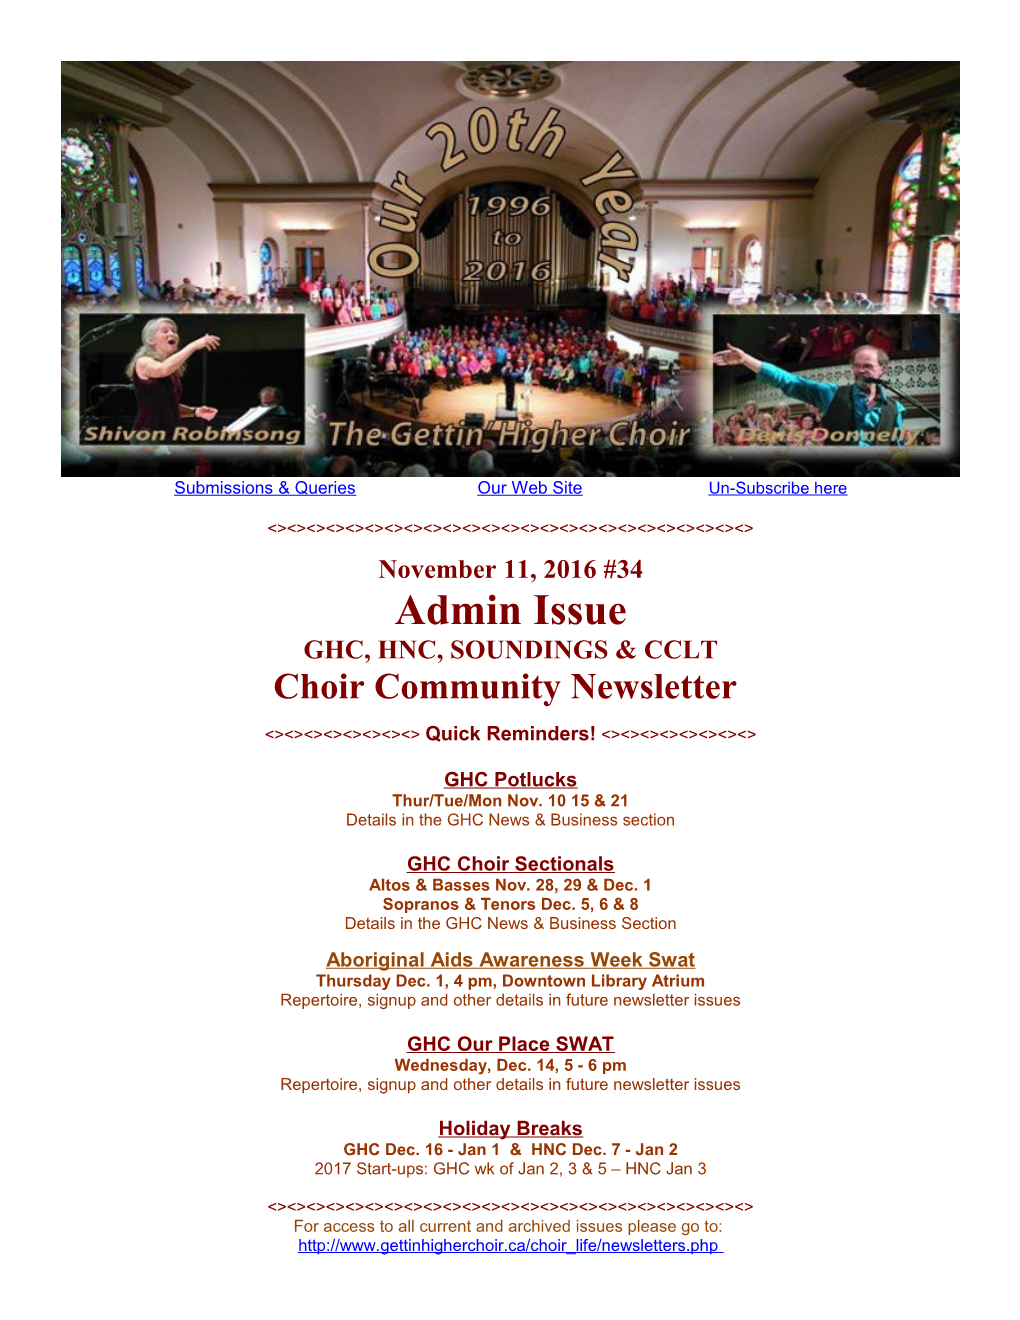 GHC Choir Sectionals Altos & Basses Nov. 28, 29 & Dec. 1